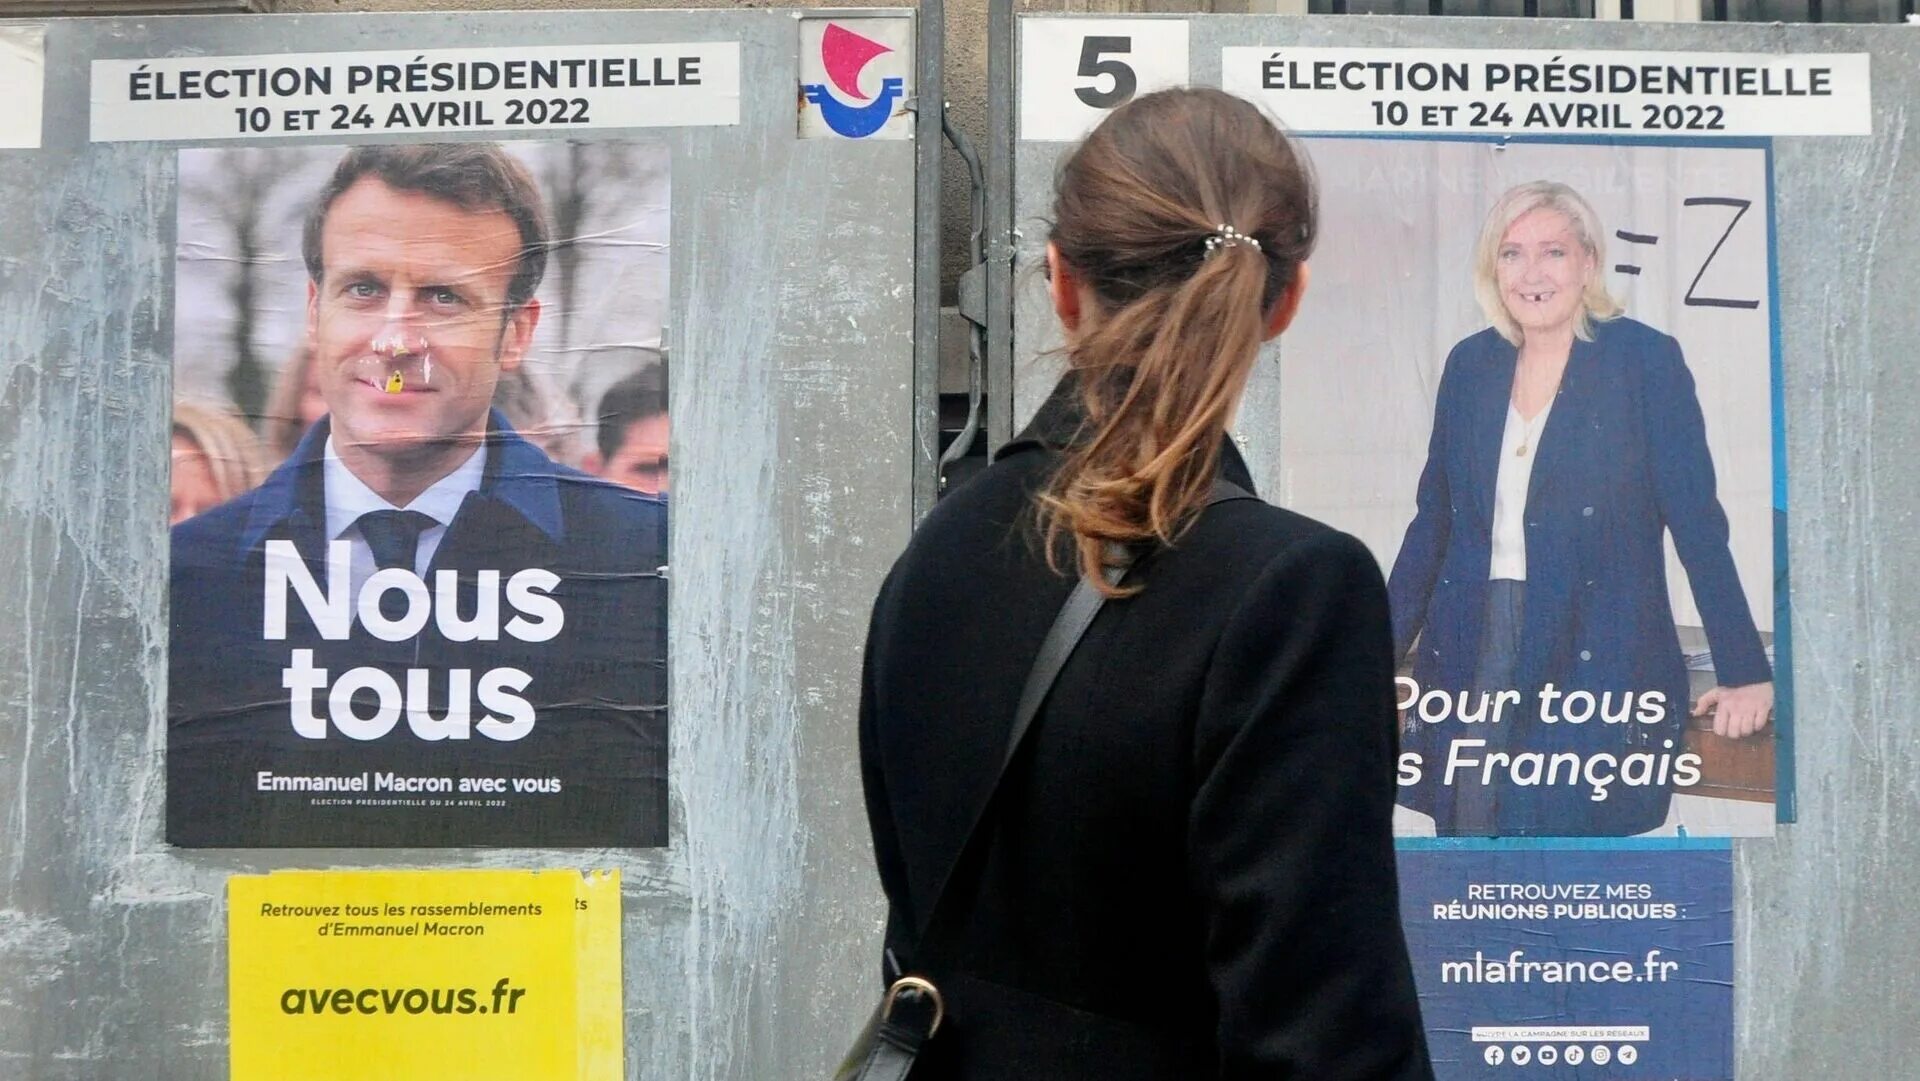 Второй тур президентских. Выборы во Франции 2022 2 тур. Итоги выборов во Франции 2022. Выборы президента Франции 2022. Президентские выборы во Франции (2022).